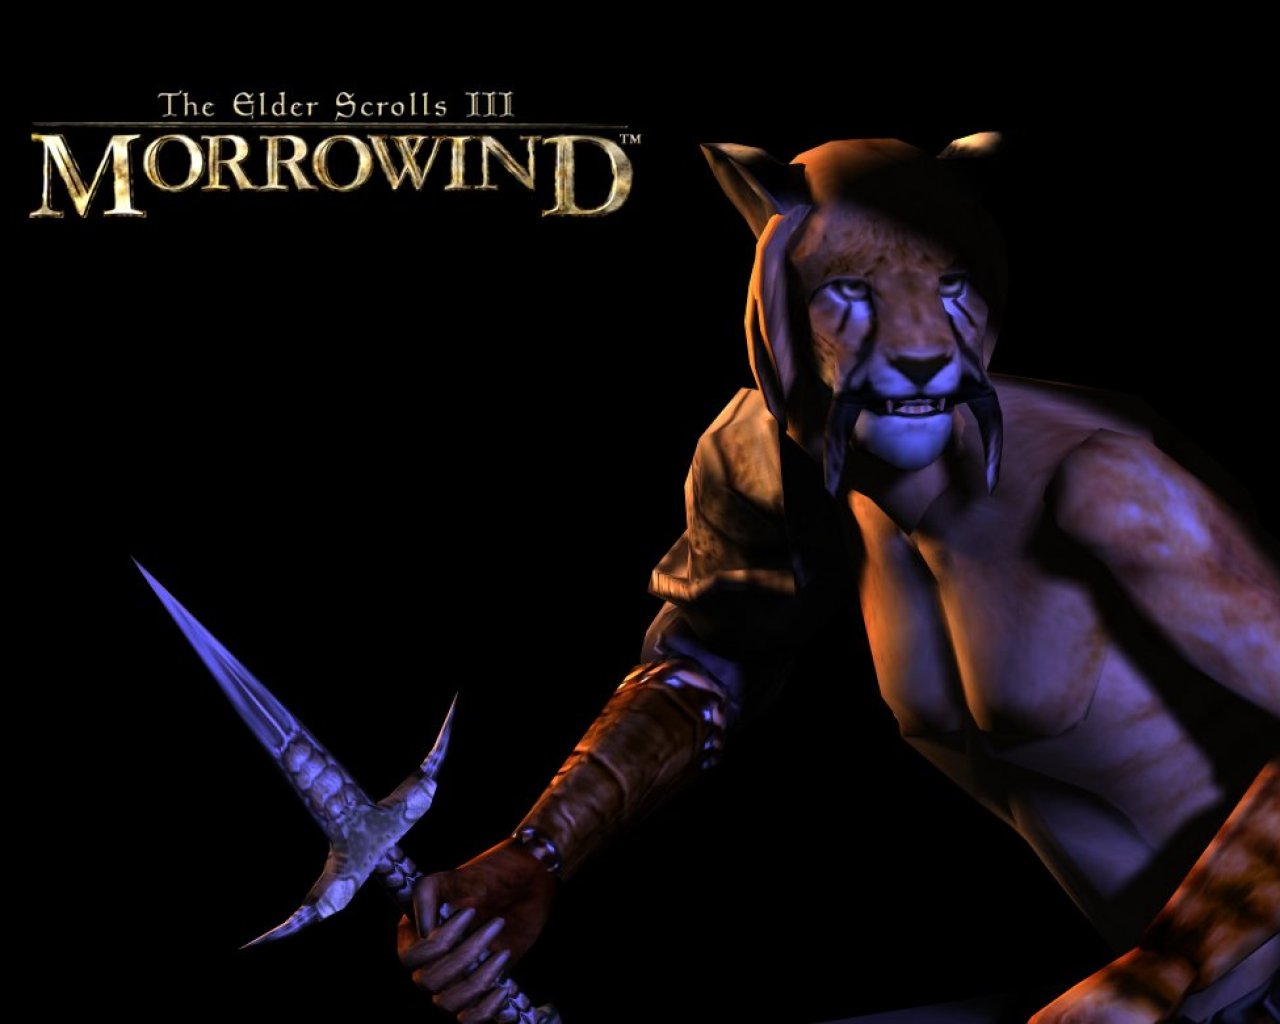 Wallpaper The Elder Scrolls III: Morrowind "Khajiit"